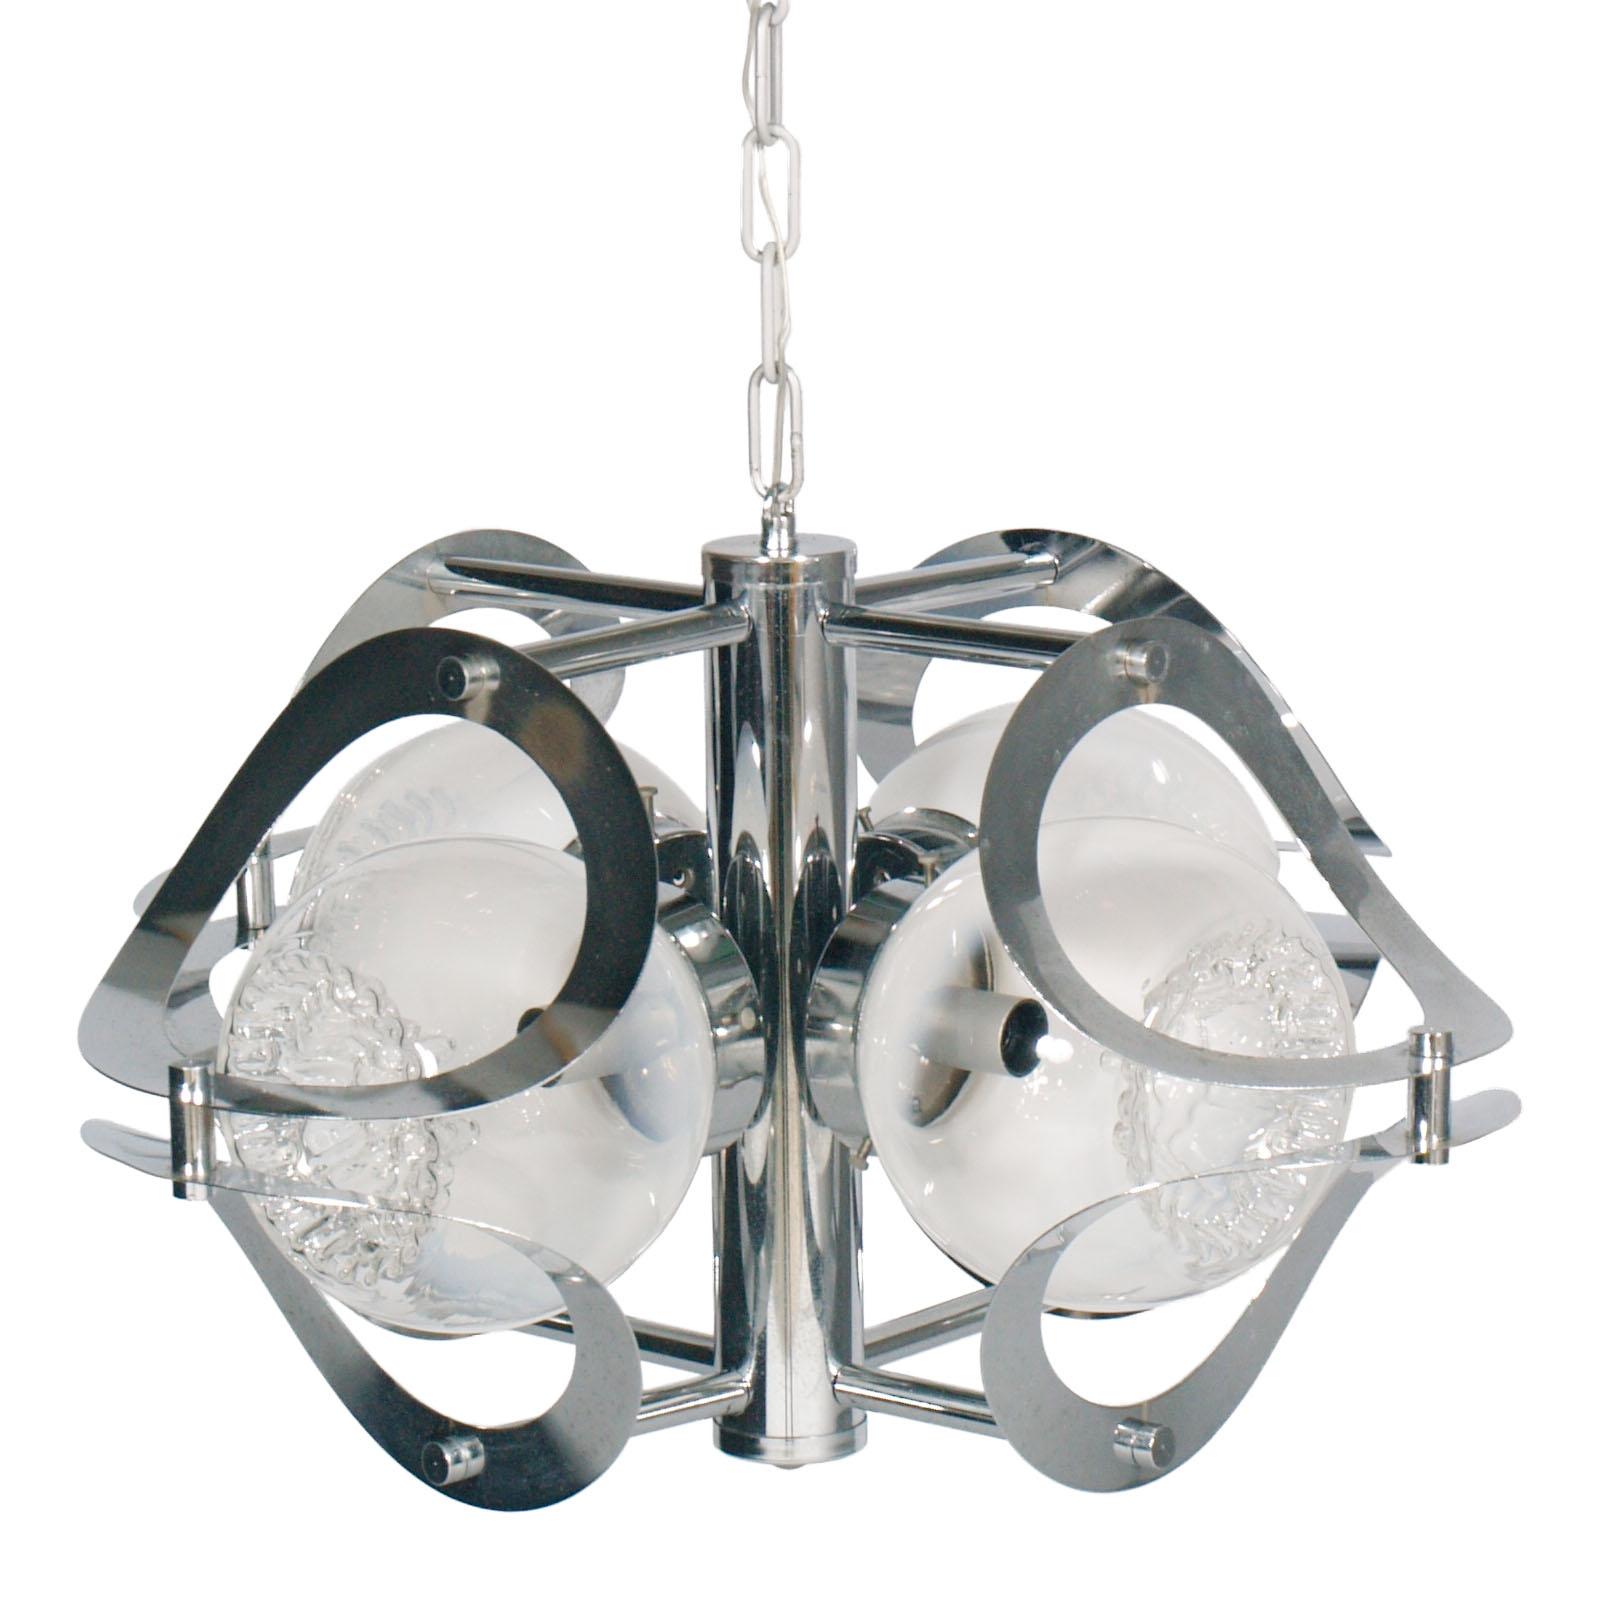 Lustre des années 1970 en acier chromé et verre de Murano, 4 lumières, par Mazzega Murano, avec système électrique révisé

Dimensions en cm : Hauteur 90/32, diamètre 48 

Murano est célèbre pour ses magnifiques lampes en verre, toutes fabriquées